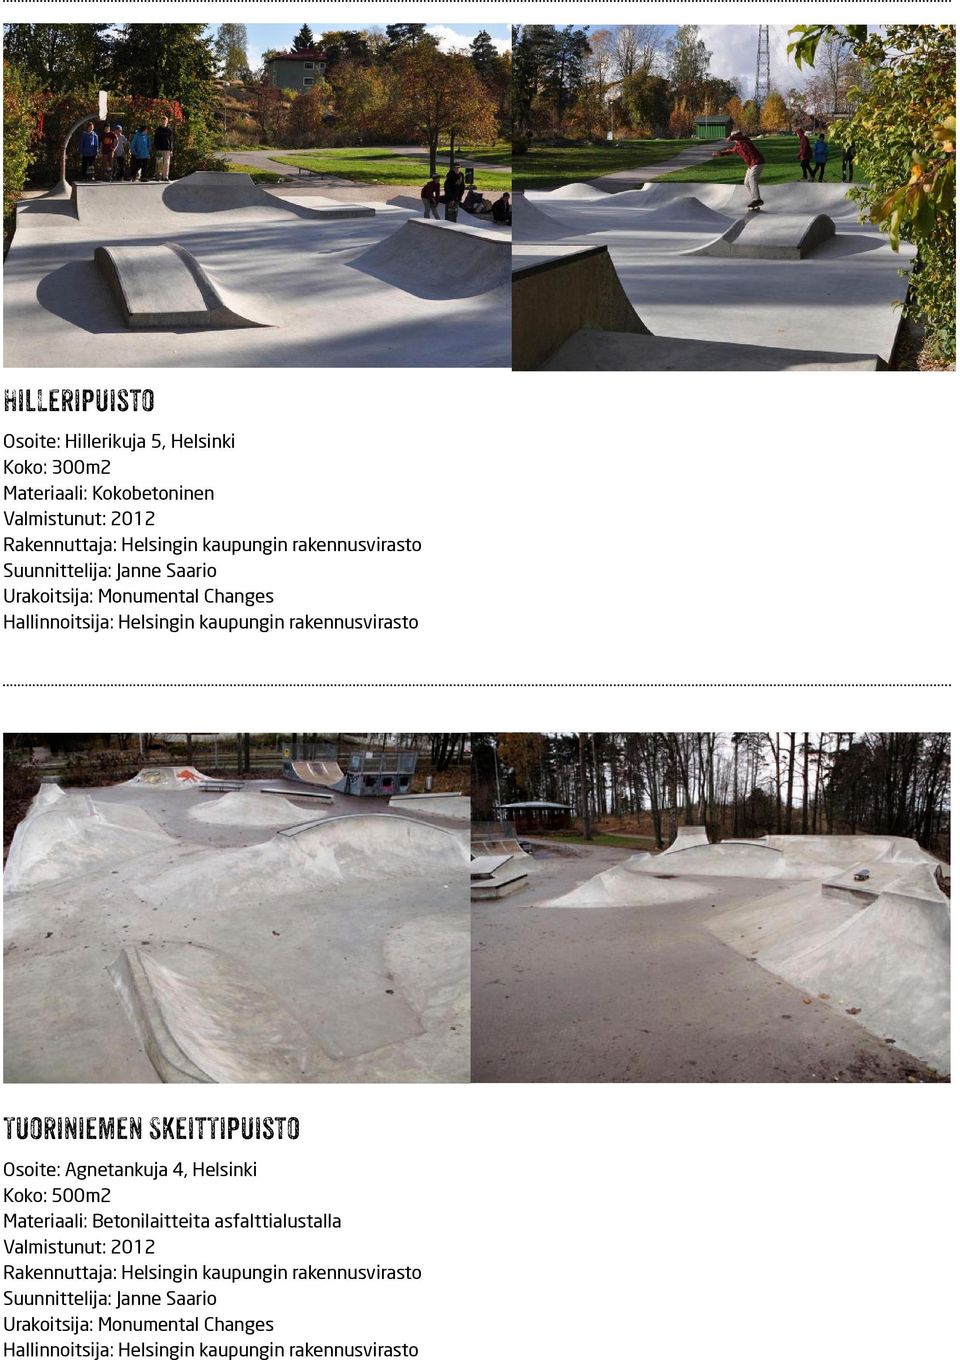 Skeittipuisto Osoite: Agnetankuja 4, Helsinki Koko: 500m2 Materiaali: Betonilaitteita asfalttialustalla Valmistunut: 2012 Rakennuttaja: